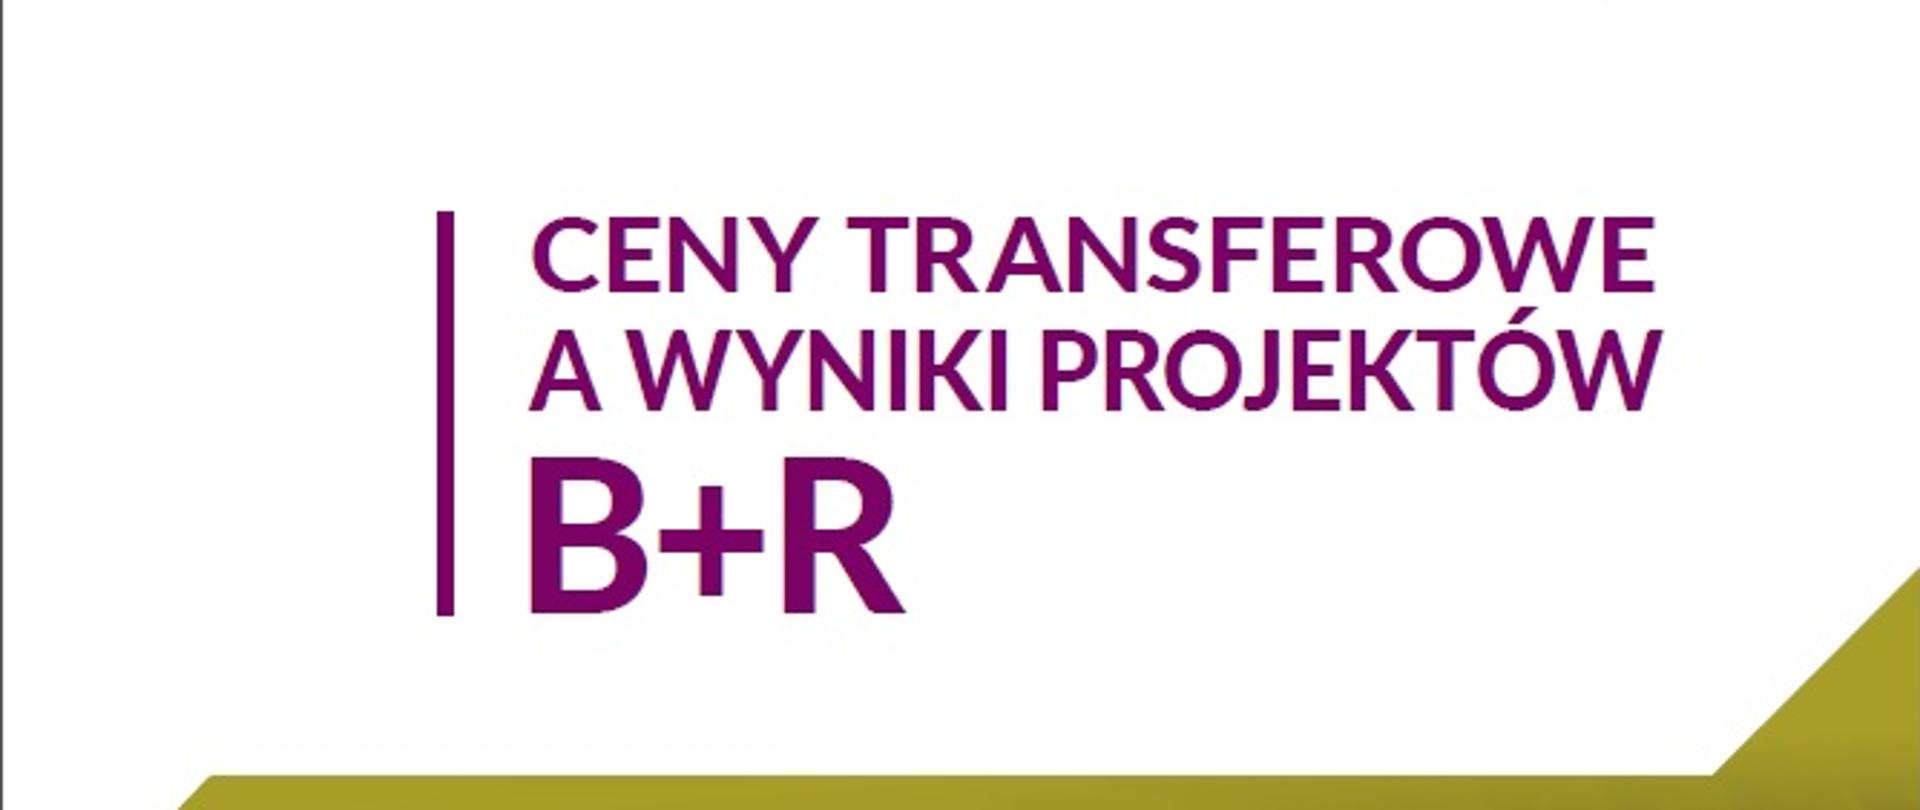 Ceny transferowe a wyniki projektów B+R. Analiza ryzyka